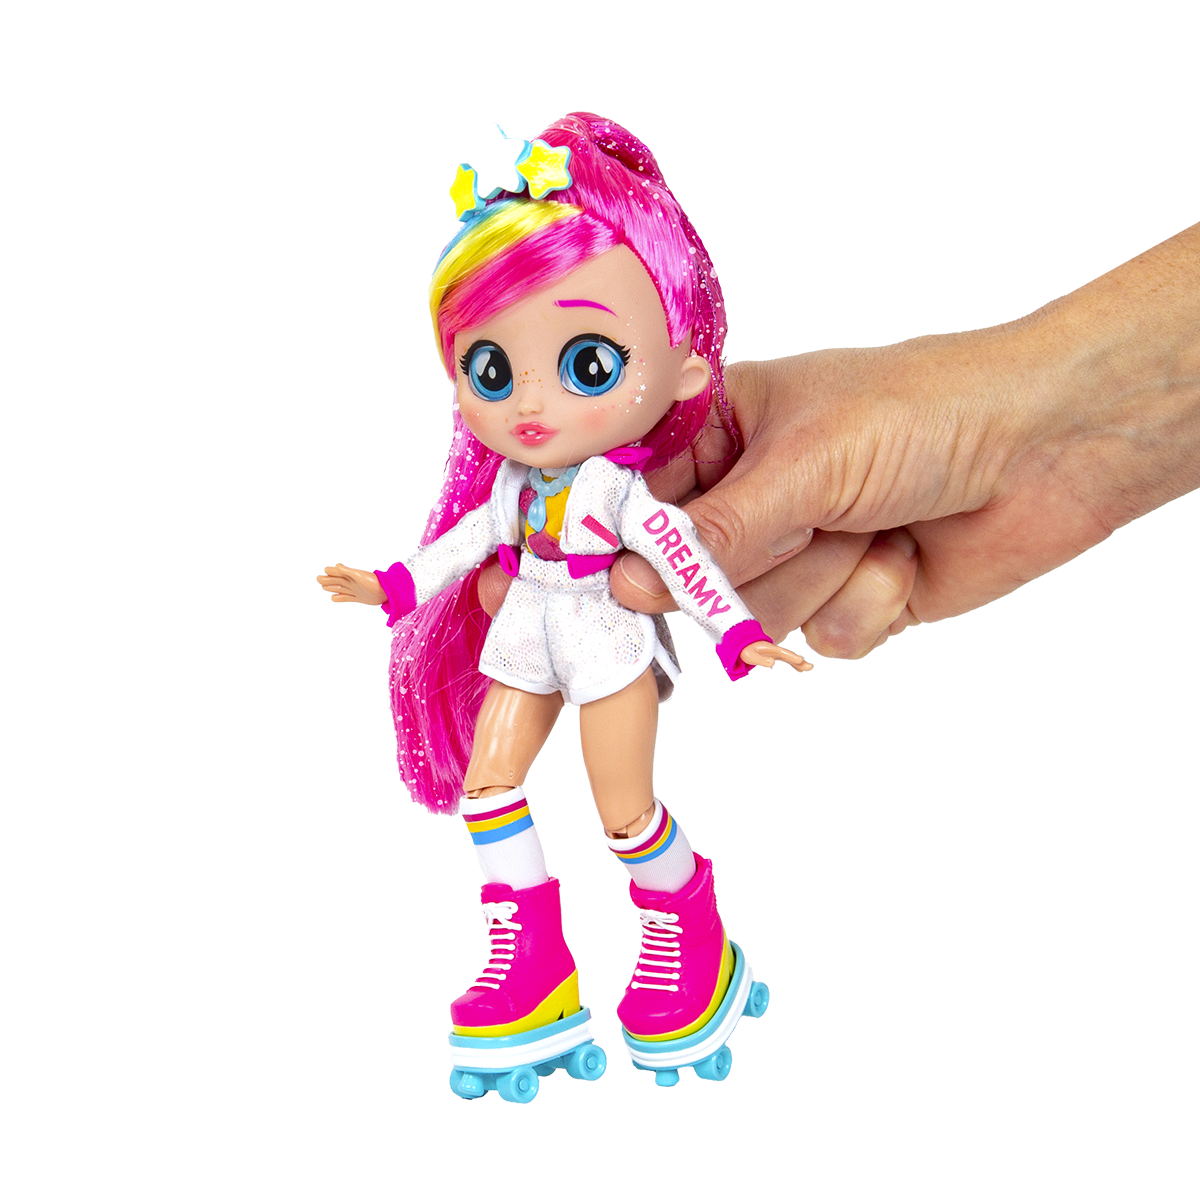 Bff talents dreamy & rym, bambola con accessori alla moda e unicorno con criniera arcobaleno e corno che si illumina e suona - CRY BABIES